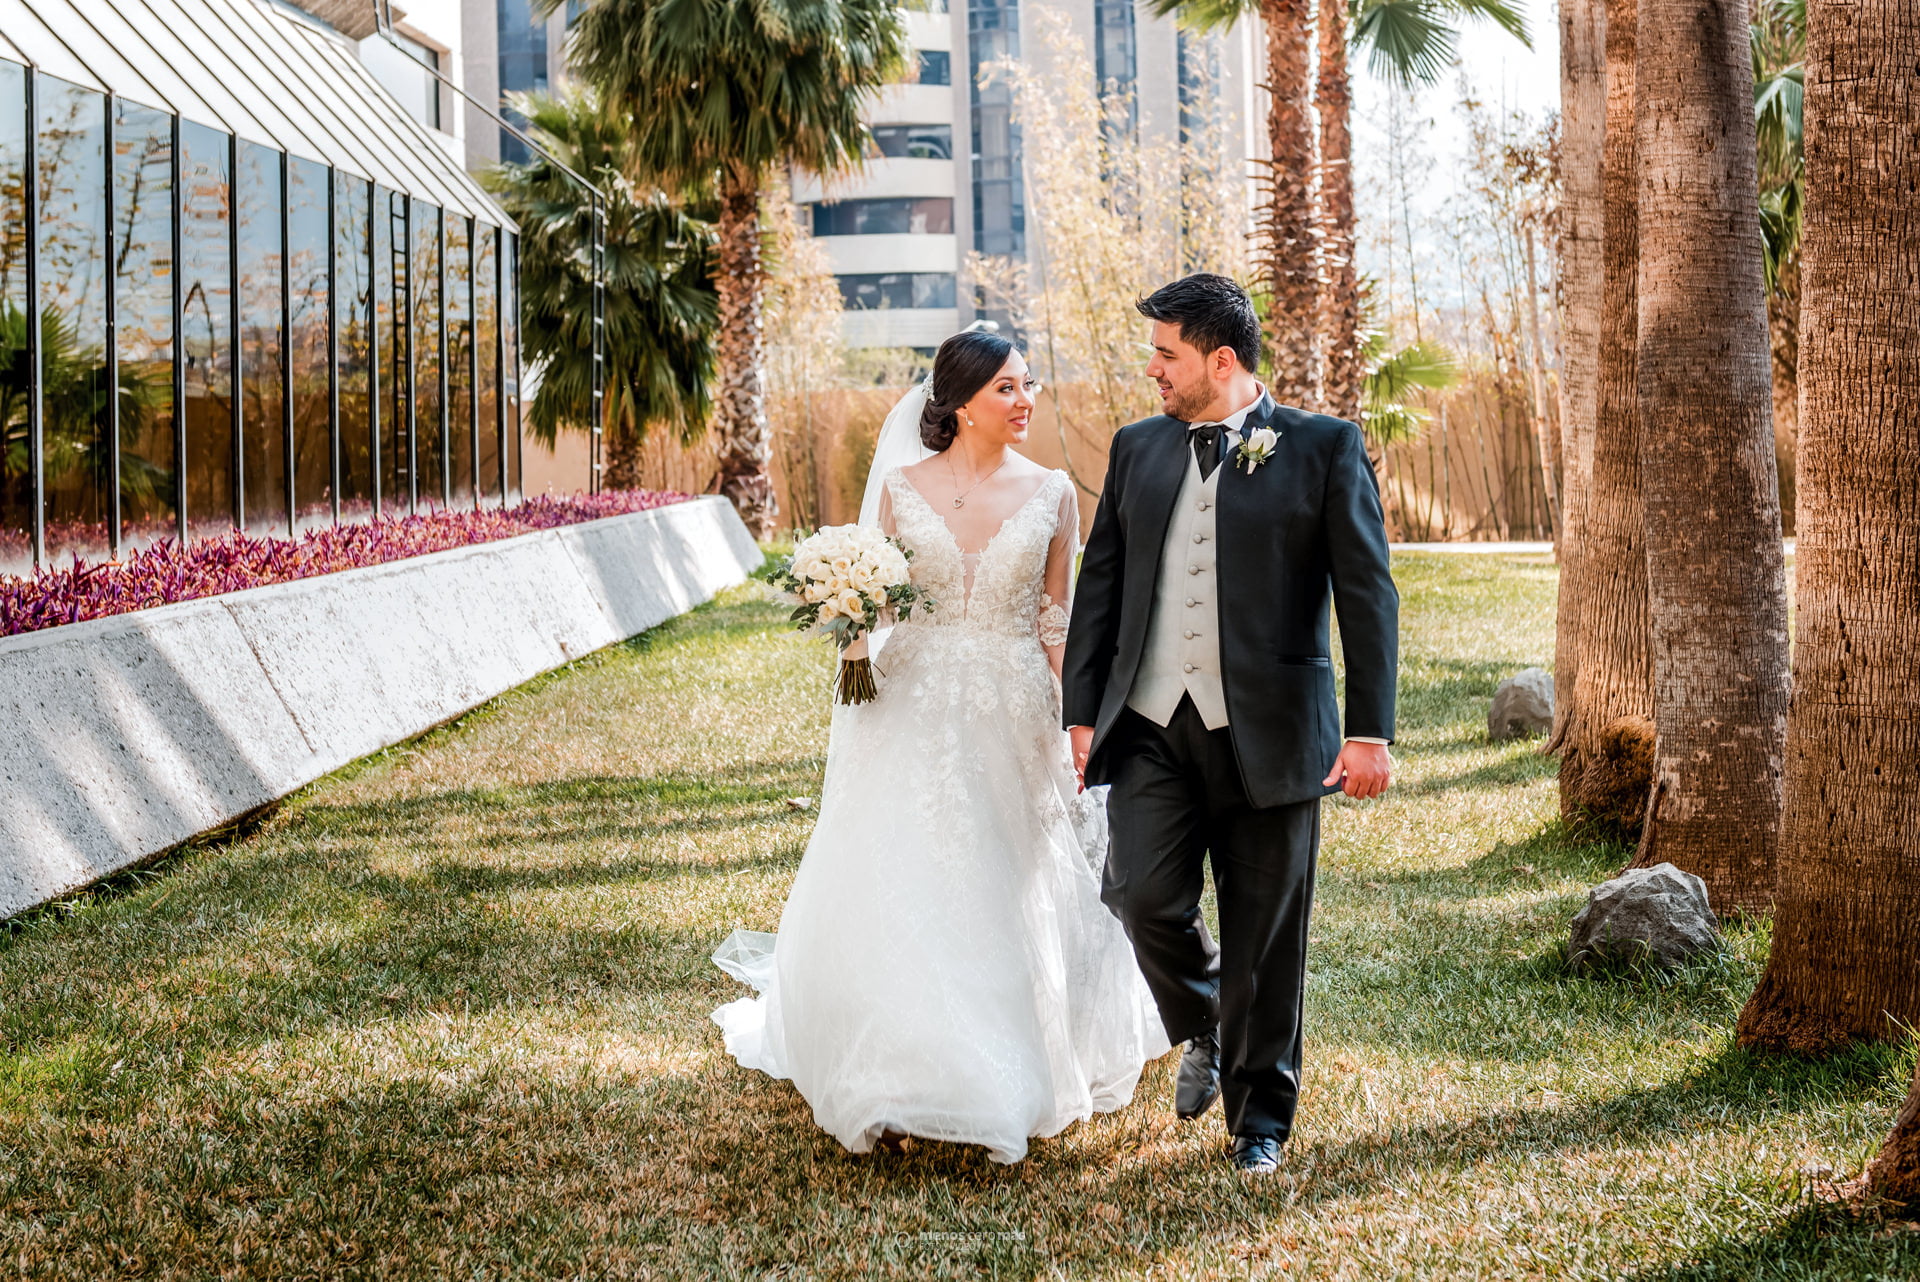 Diana y Antonio, radiantes de felicidad, caminan tomados de la mano en los jardines del Hotel MS Milenium antes de su boda. La luz del sol los baña creando una atmósfera mágica. Fotografía por "menosceromás fotografía".